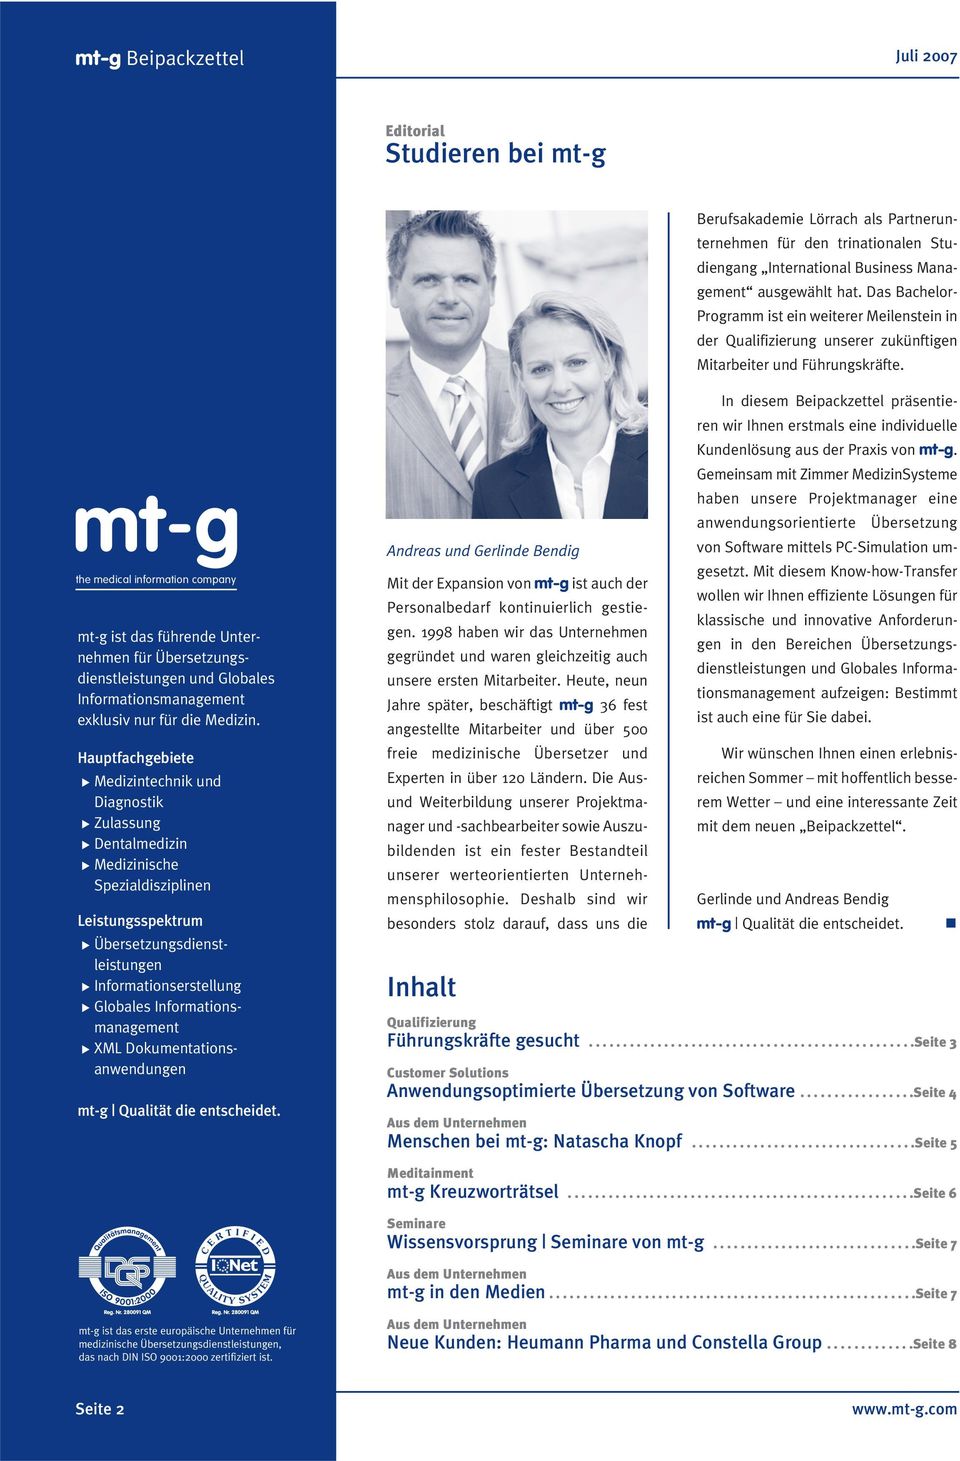 the medical information company mt-g ist das führende Unternehmen für Übersetzungsdienstleistungen und Globales Informationsmanagement exklusiv nur für die Medizin.